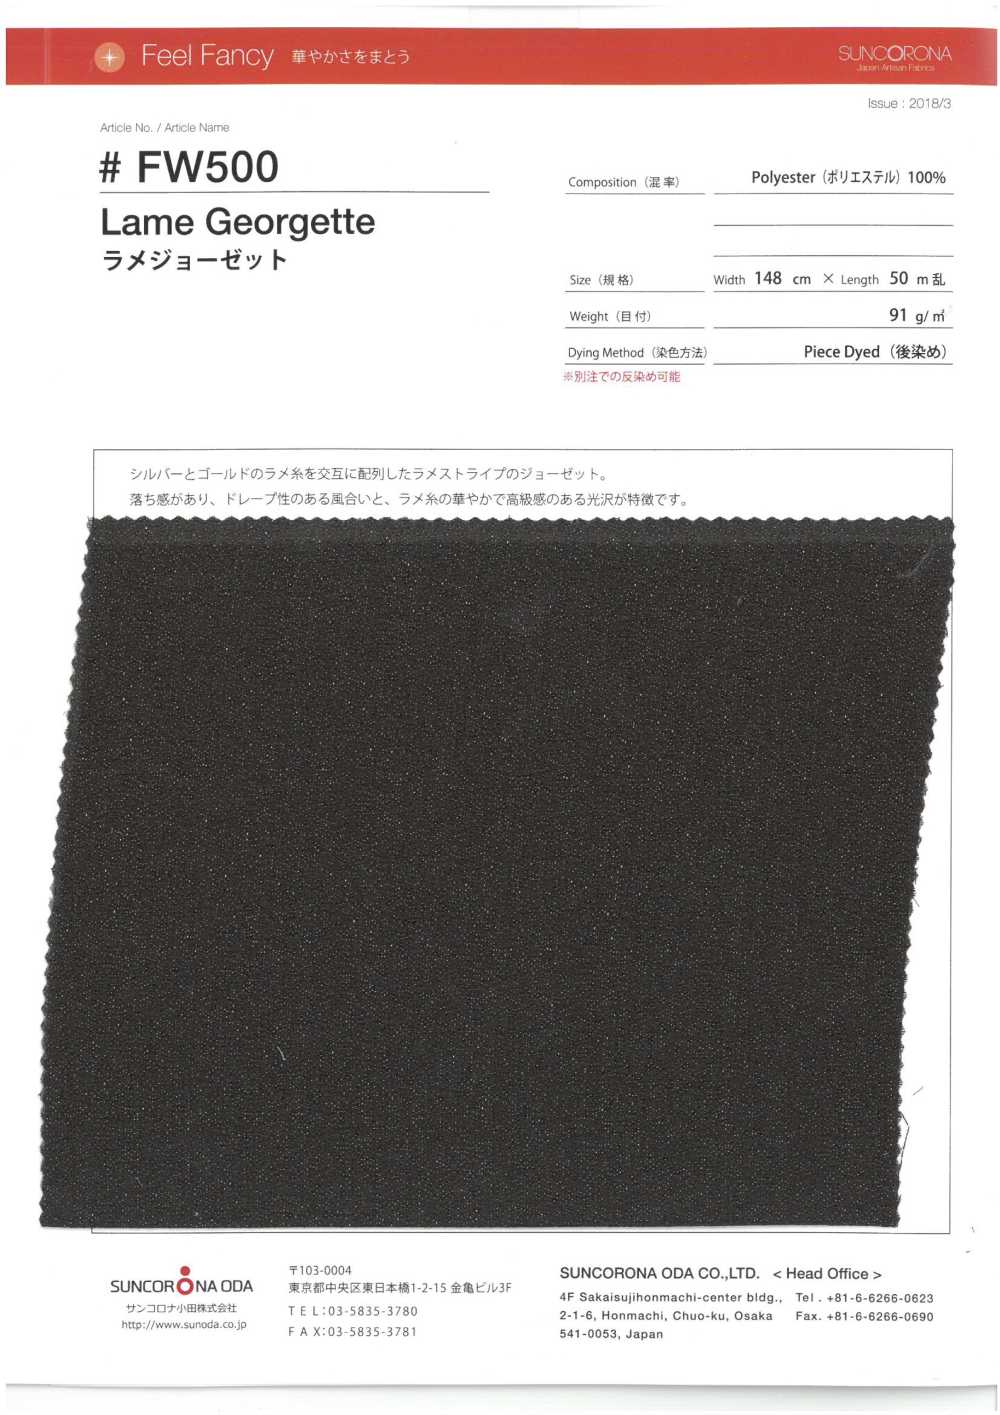 FW500 Lamé Georgette[Fabrication De Textile] Suncorona Oda